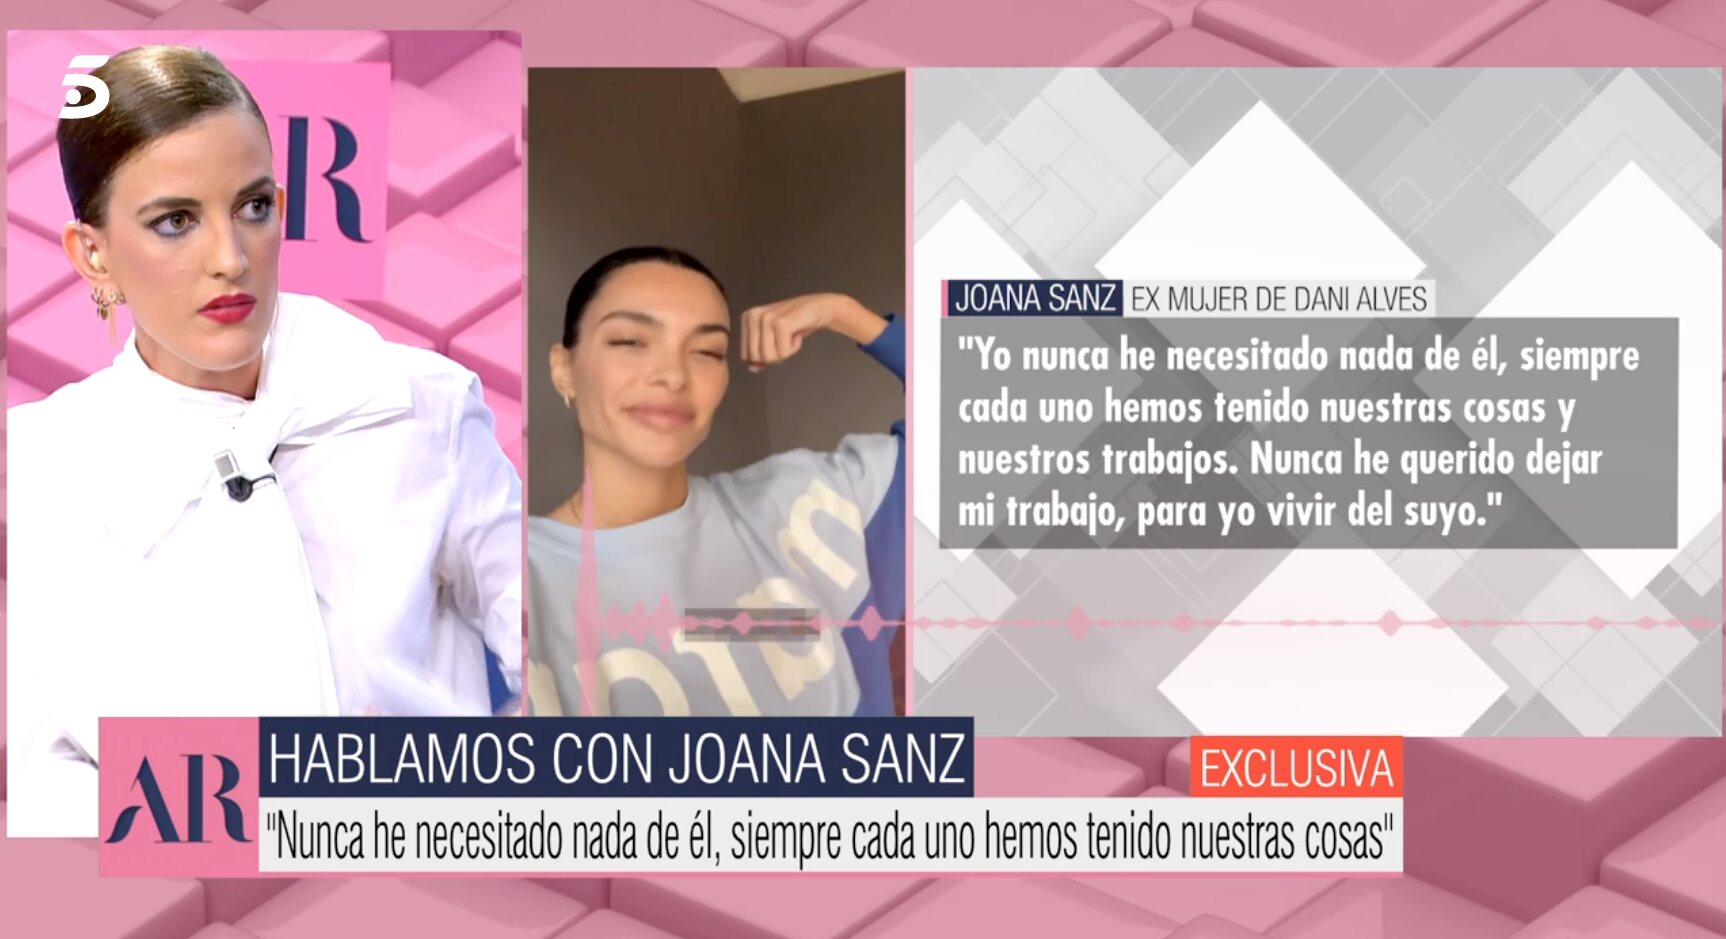 Joana Sanz ha hablado con el programa para aclarar ciertas informaciones | Foto: Telecinco.es